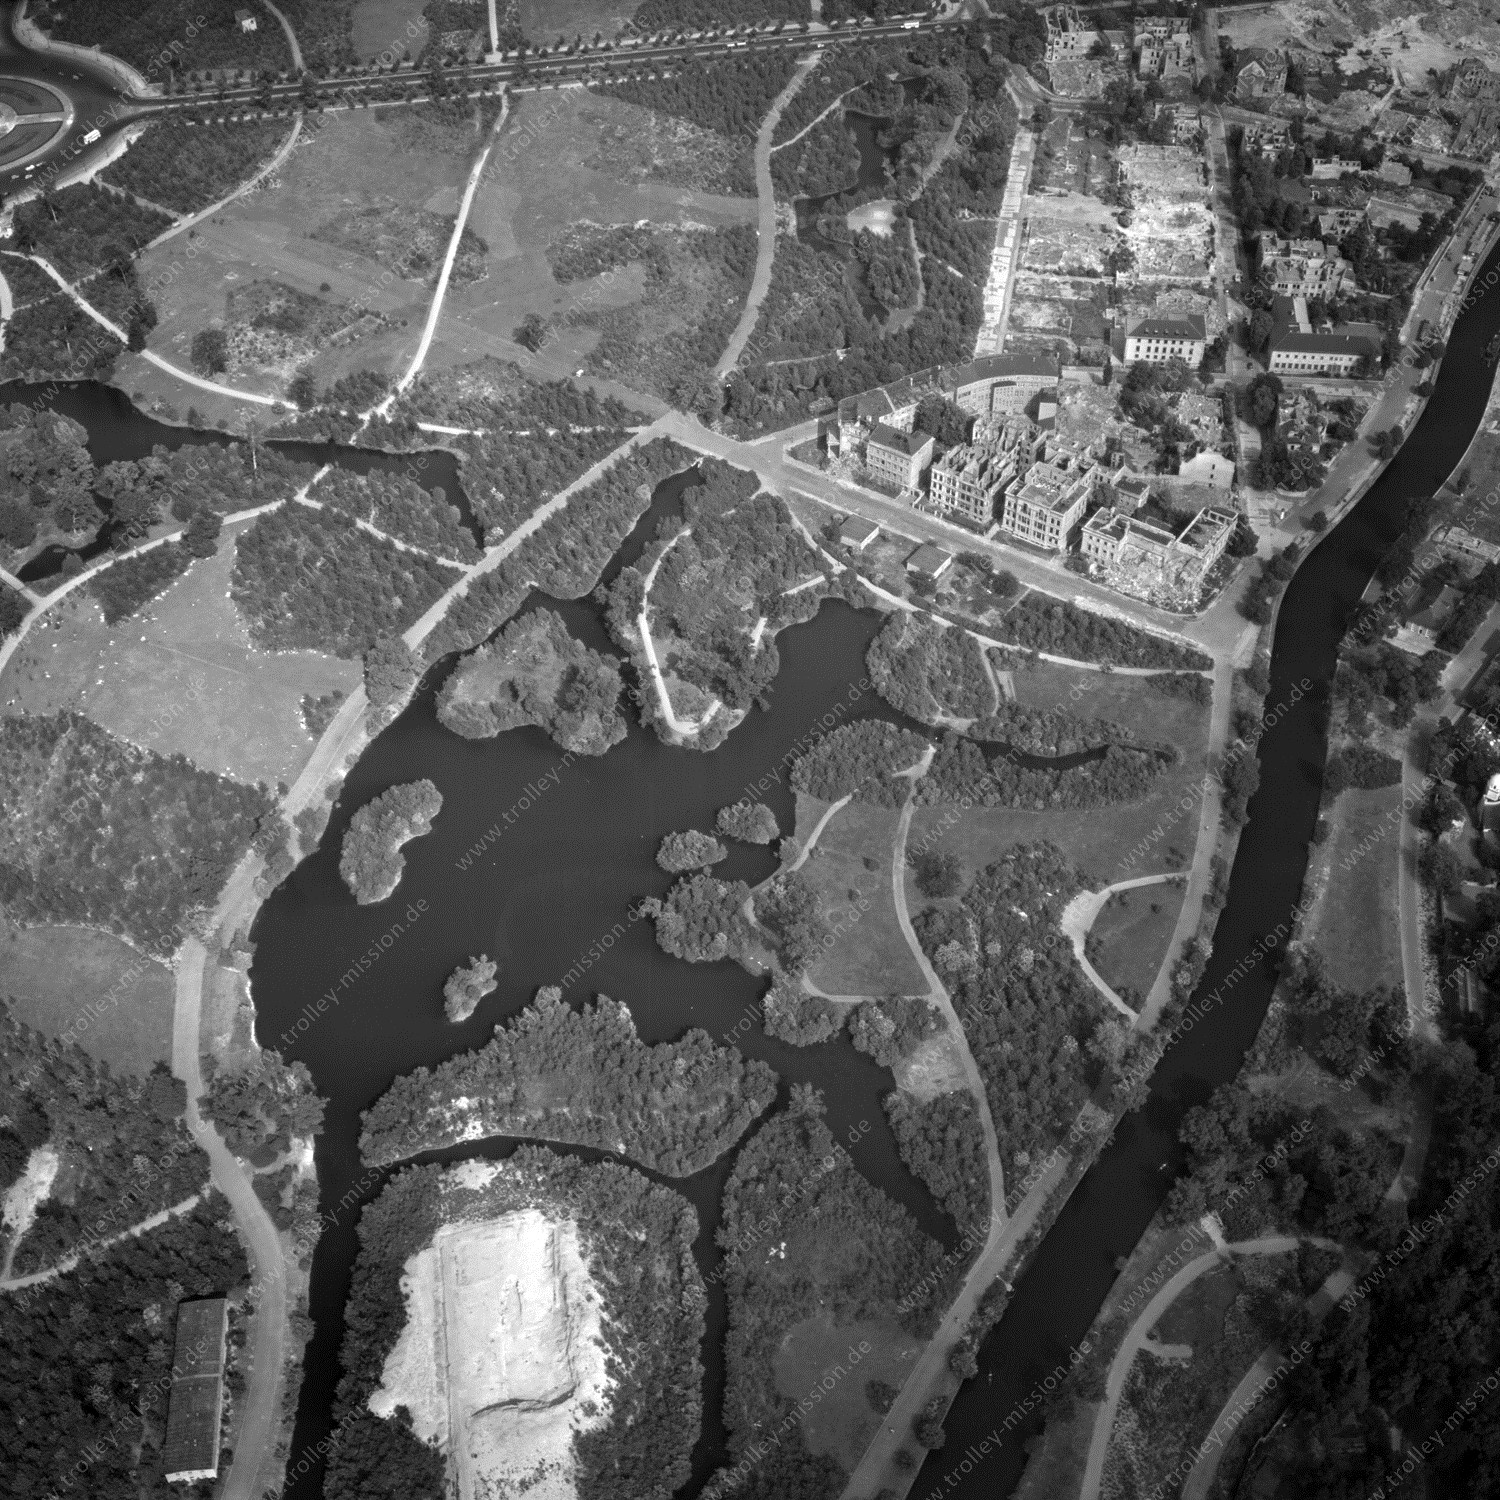 Alte Fotos und Luftbilder von Berlin - Luftbildaufnahme Nr. 03 - Historische Luftaufnahmen von West-Berlin aus dem Jahr 1954 - Flugstrecke Victor